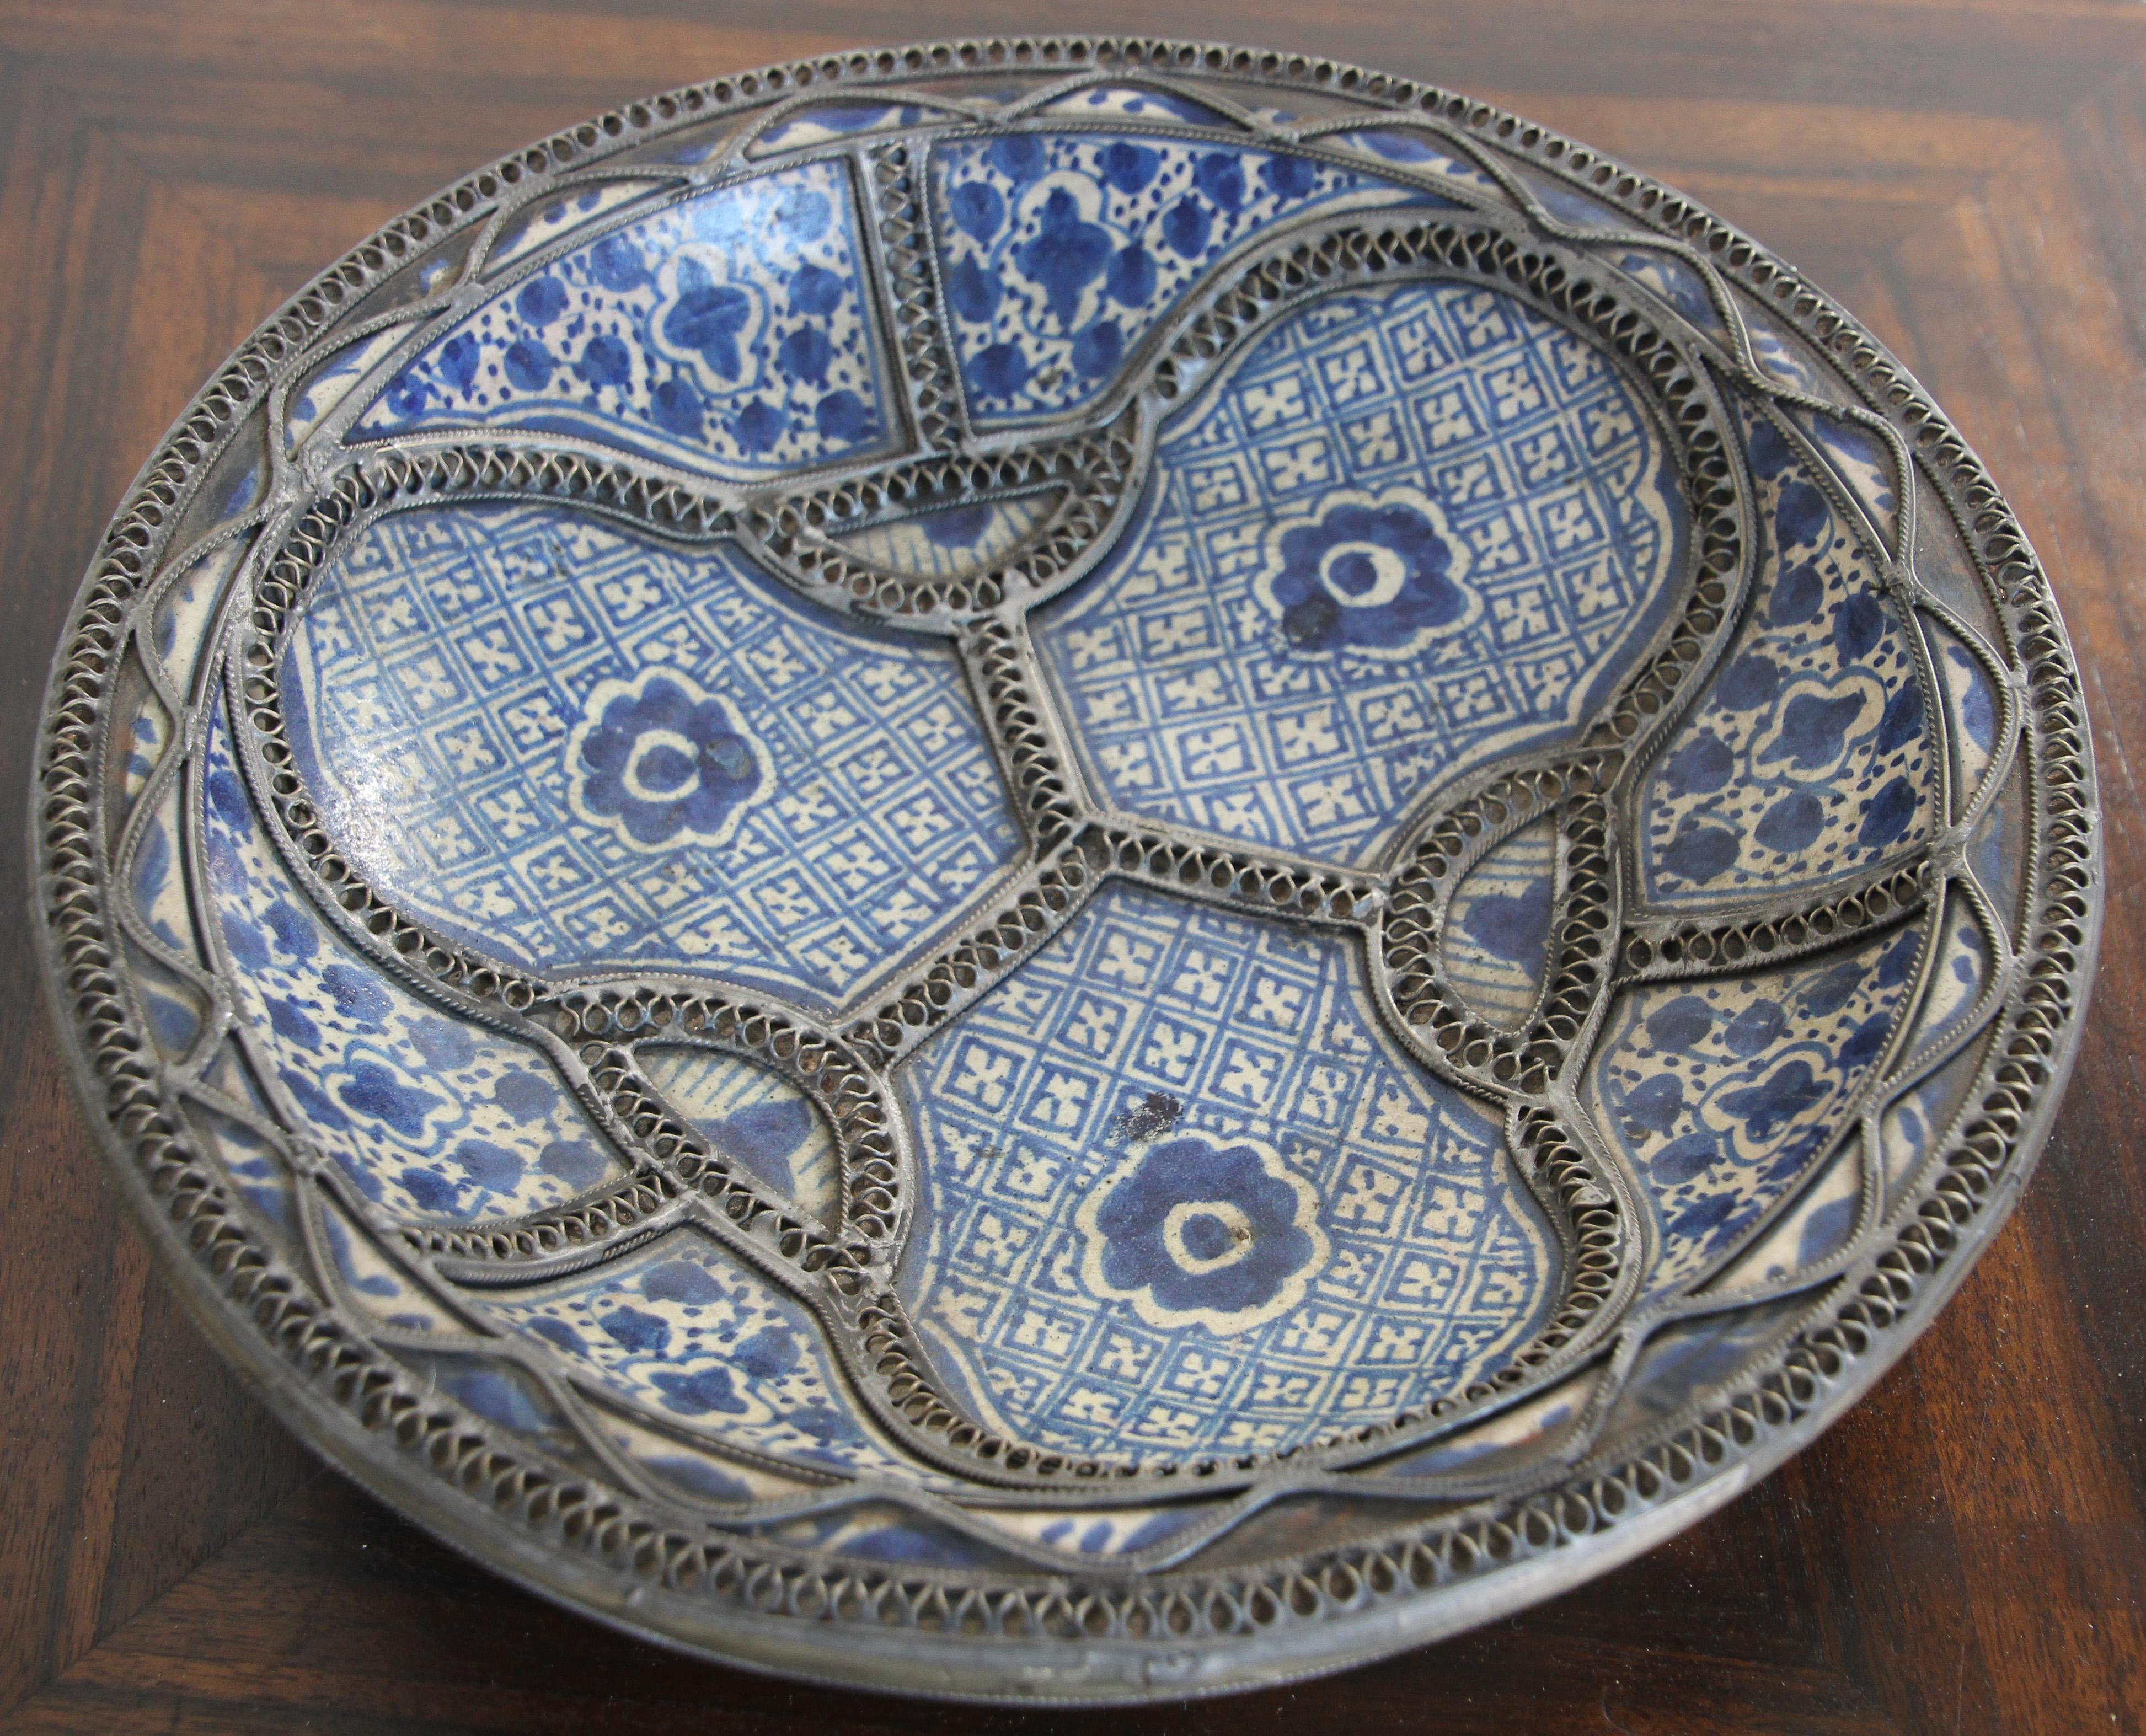 Bol, plat en céramique décorative mauresque marocaine polychrome, fabriqué à la main à Fès. 
Bleu de Fez, très beaux designs peints à la main par un artiste de Fez.
Motifs mauresques géométriques et floraux et ornés de motifs en filigrane en